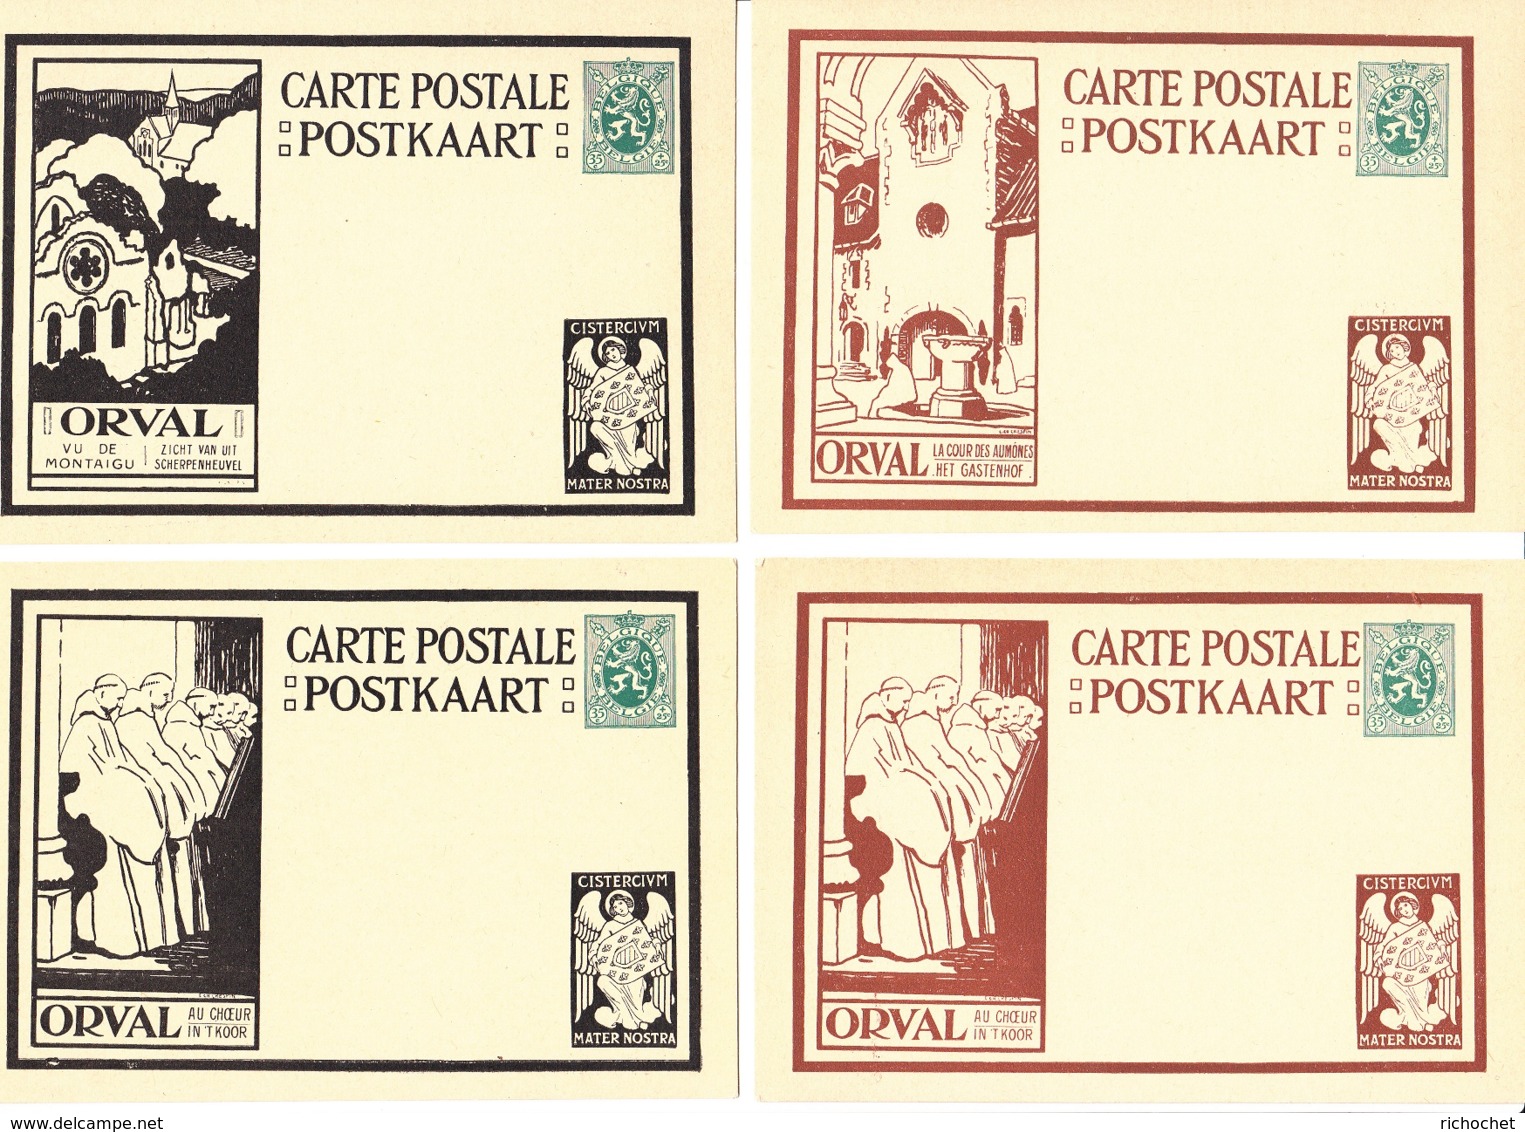 Belgique - Cartes Illustrées N° 5 Orval Avec Ange Dans Le Coin Inférieur Droit Série De 12 Cartes - Illustrierte Postkarten (1971-2014) [BK]